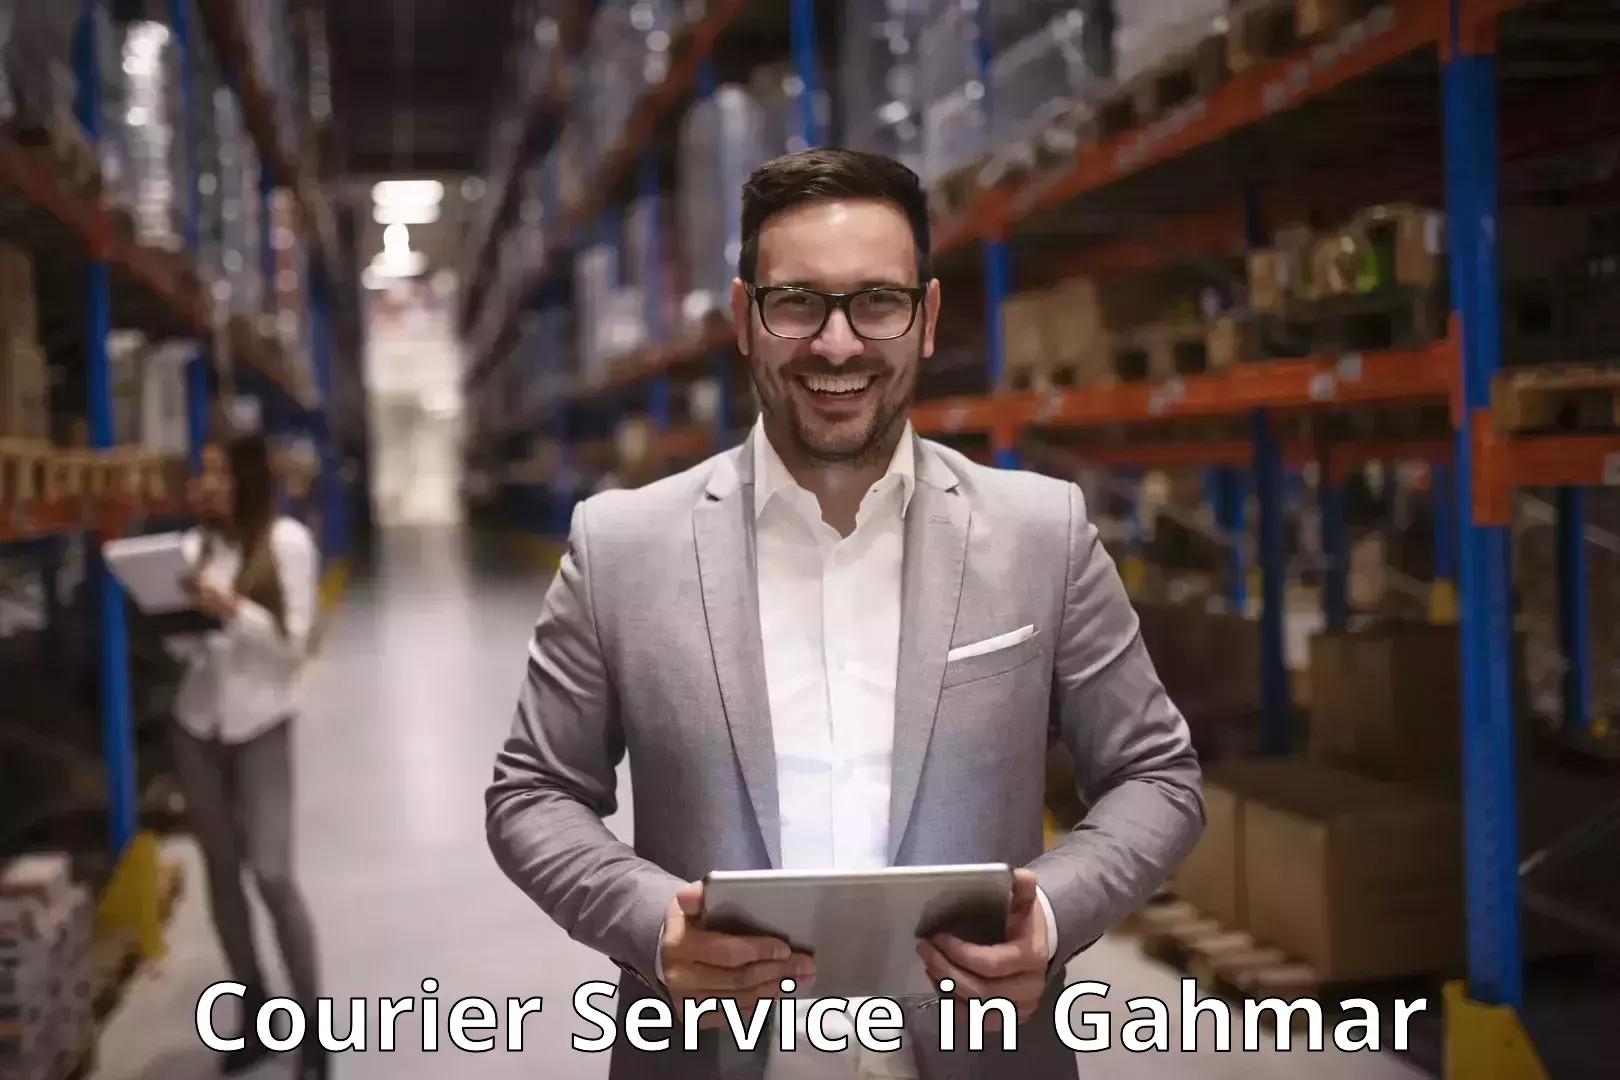 Customer-centric shipping in Gahmar